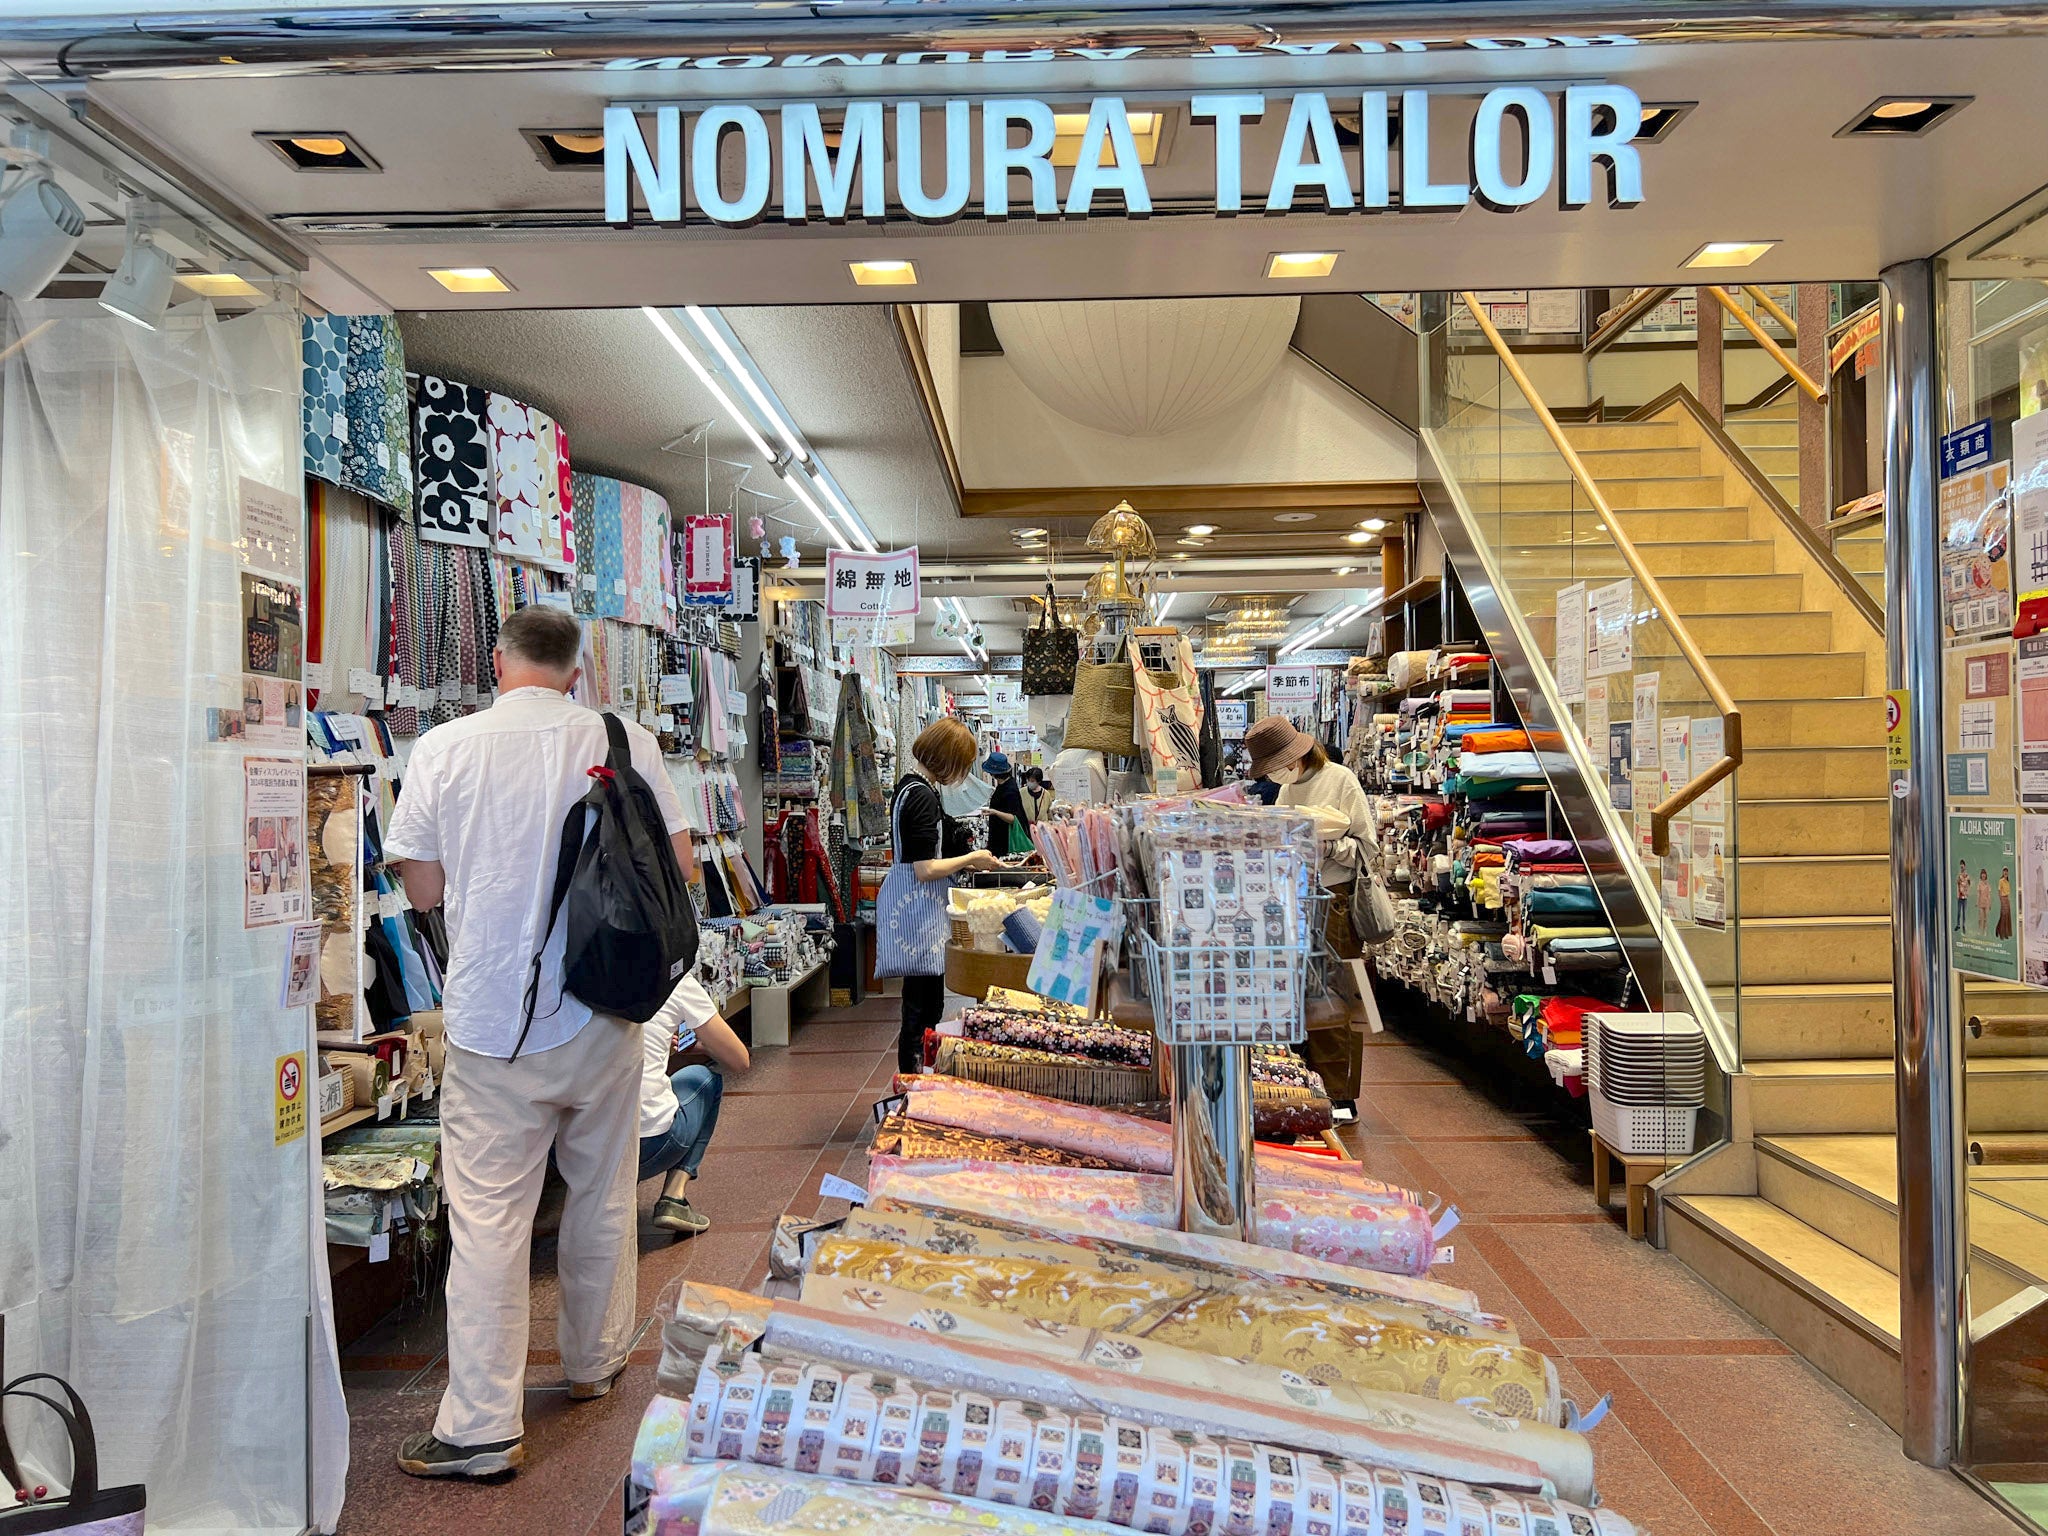 Nomura Tailor on Shijo Dori, Kyoto JP